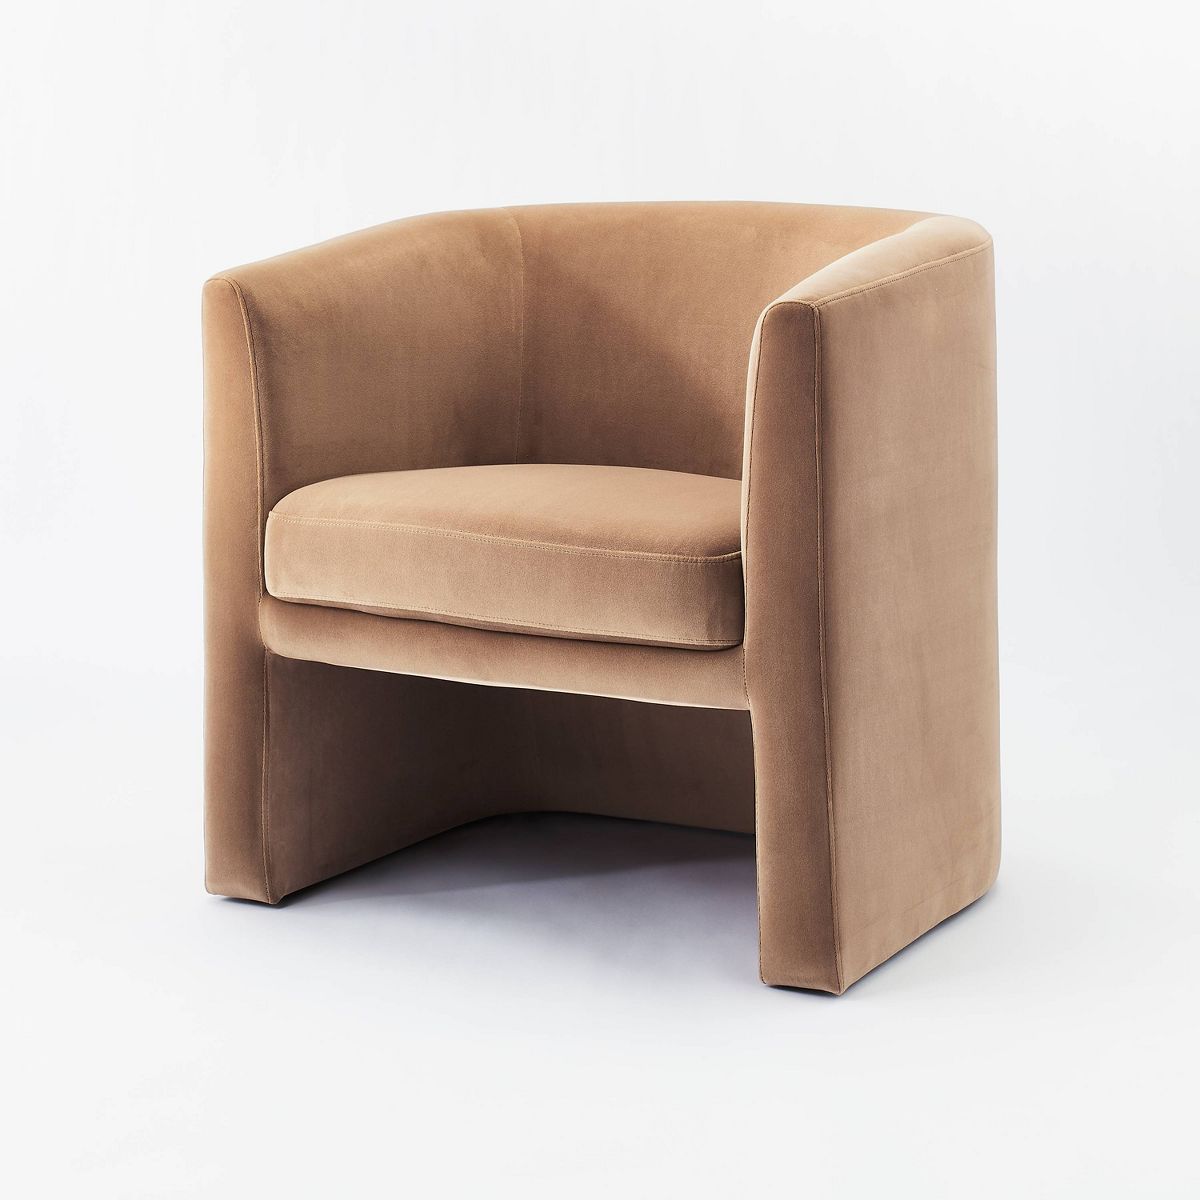 Vernon Upholstered Barrel Accent Chair Light Brown Velvet - Threshold™ designed with Studio McG... | Target